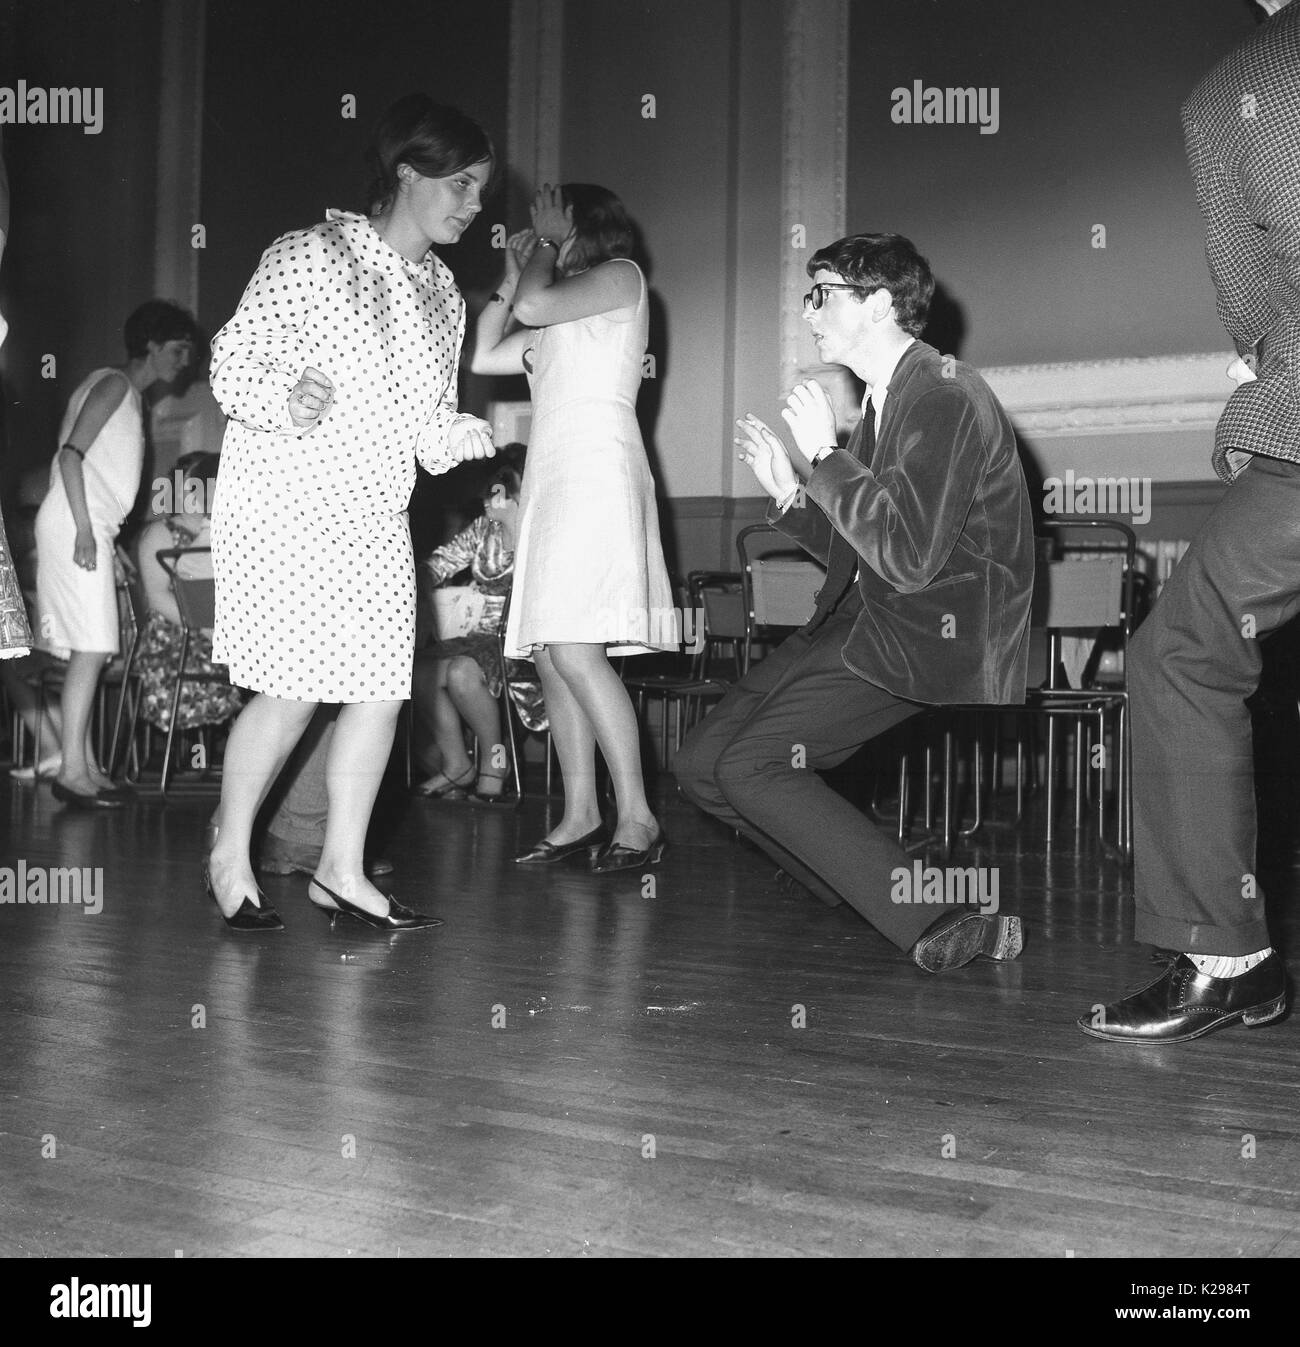 1964, historial, England, UK, The new dance craze, l'immagine mostra un ragazzo e una ragazza che ballano da solo ai nuovi suoni dell'epoca, con il ragazzo veramente groiling, forse ispirato dal suono di successo, 'la torsione,'. Foto Stock